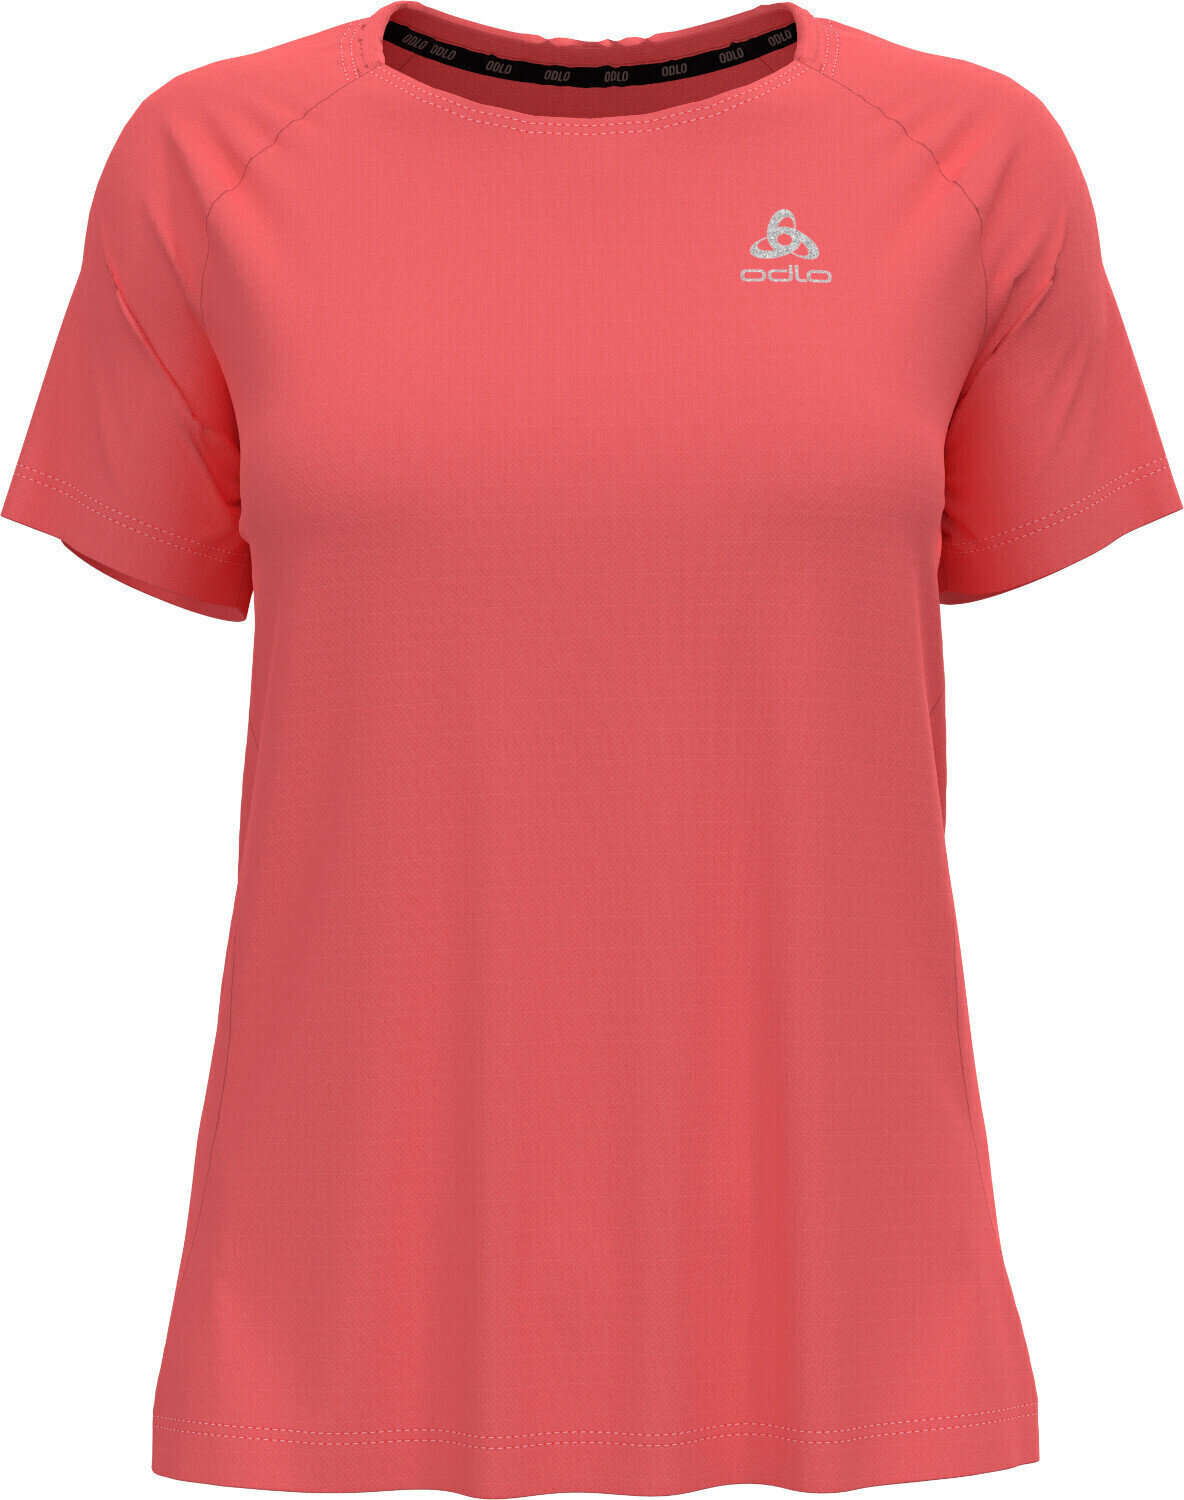 Koszulka do biegania z krótkim rękawem
 Odlo Essential T-Shirt Siesta S Koszulka do biegania z krótkim rękawem